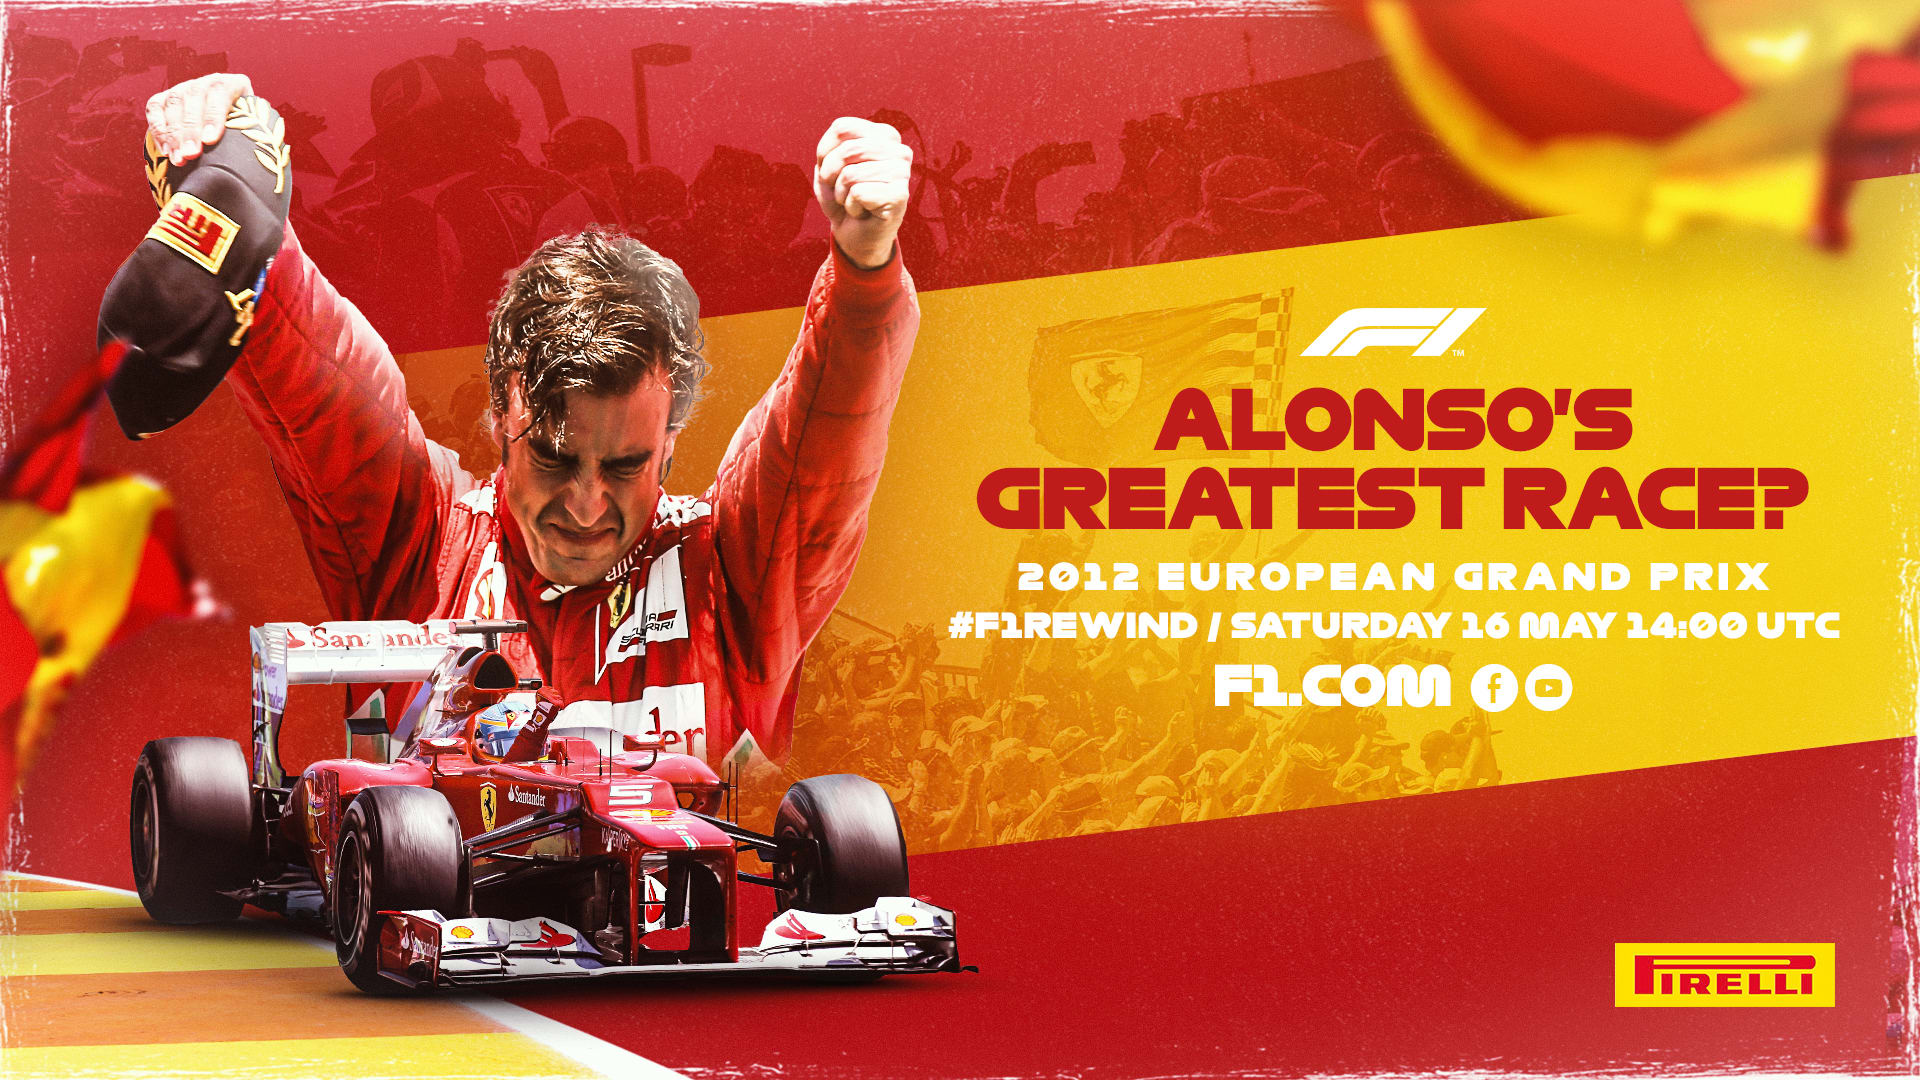 F1 REWIND Watch Alonsos superb 2012 European Grand Prix win in full Formula 1®